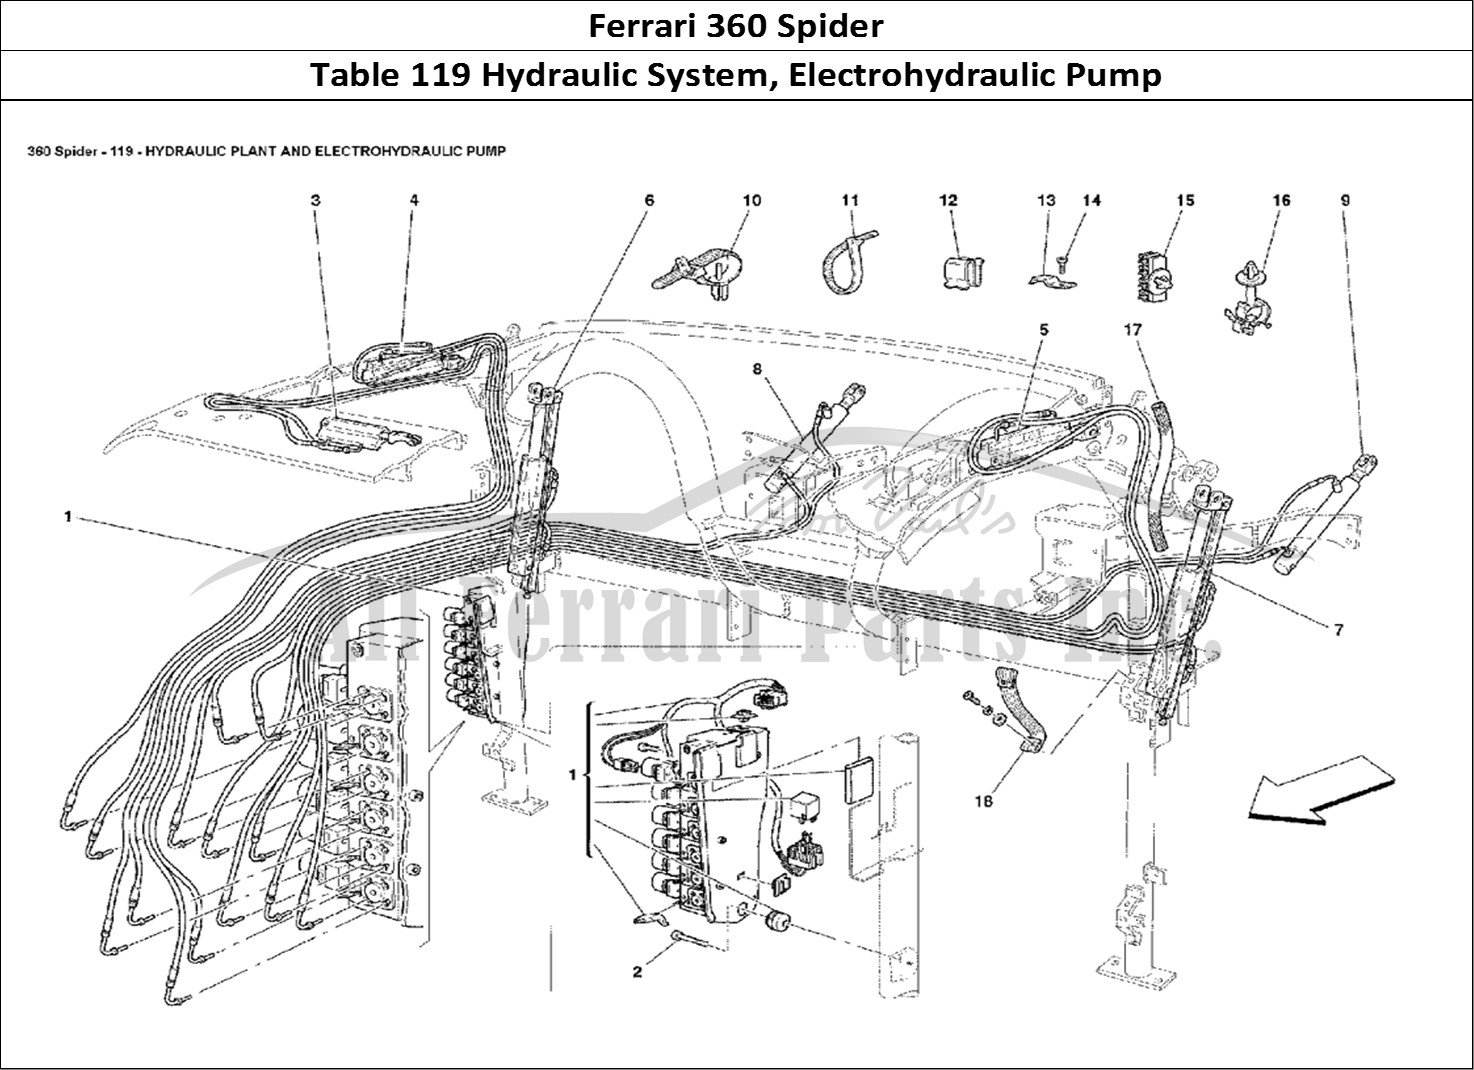 Ferrari Parts Ferrari 360 Spider Page 119 Hydraulic Plant and Elect